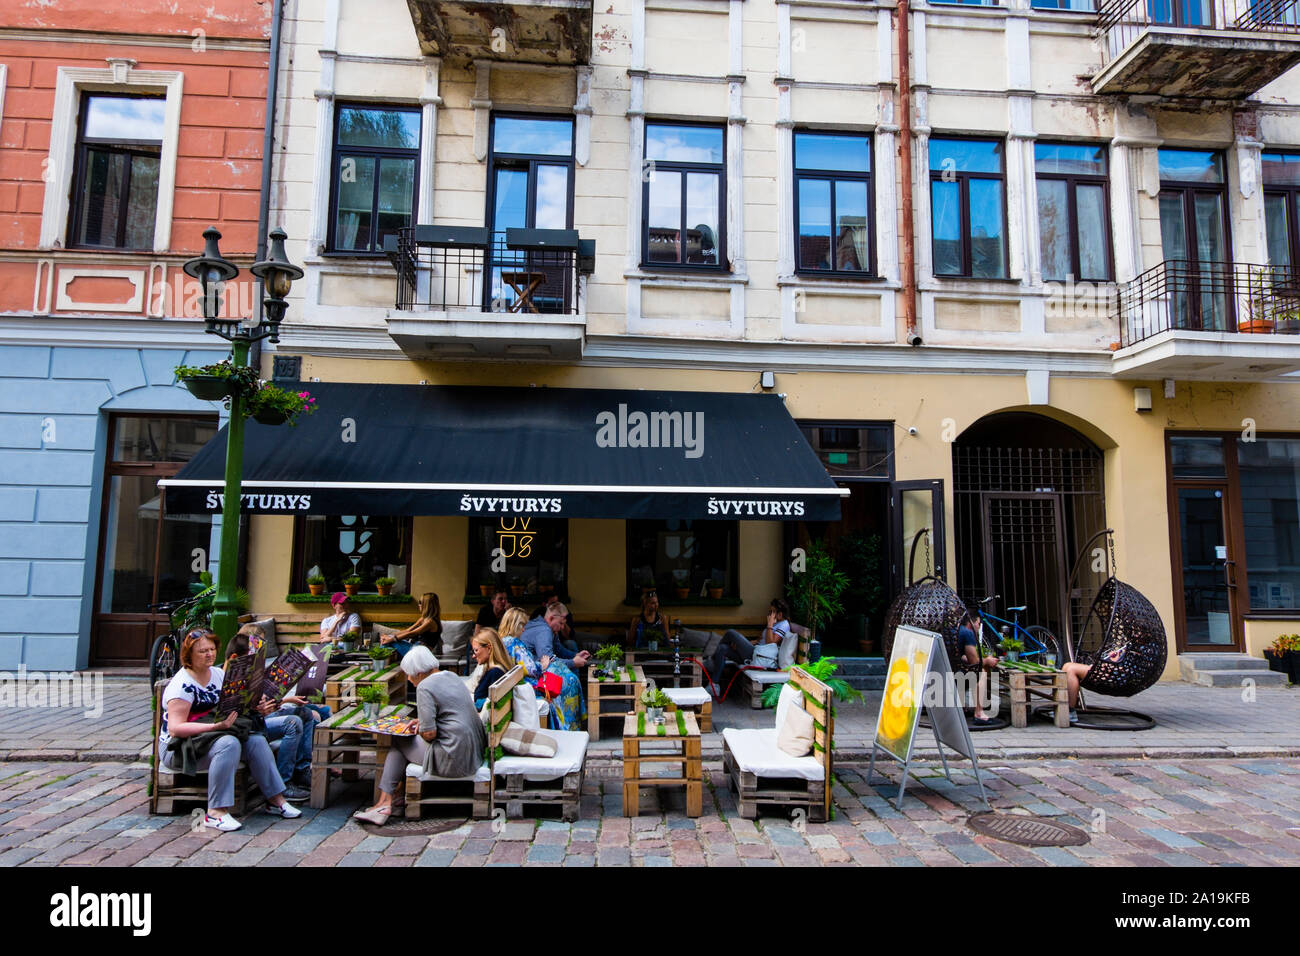 Cafe terrace, Vilniaus gatve, old town, Kaunas, Lithuania Stock Photo